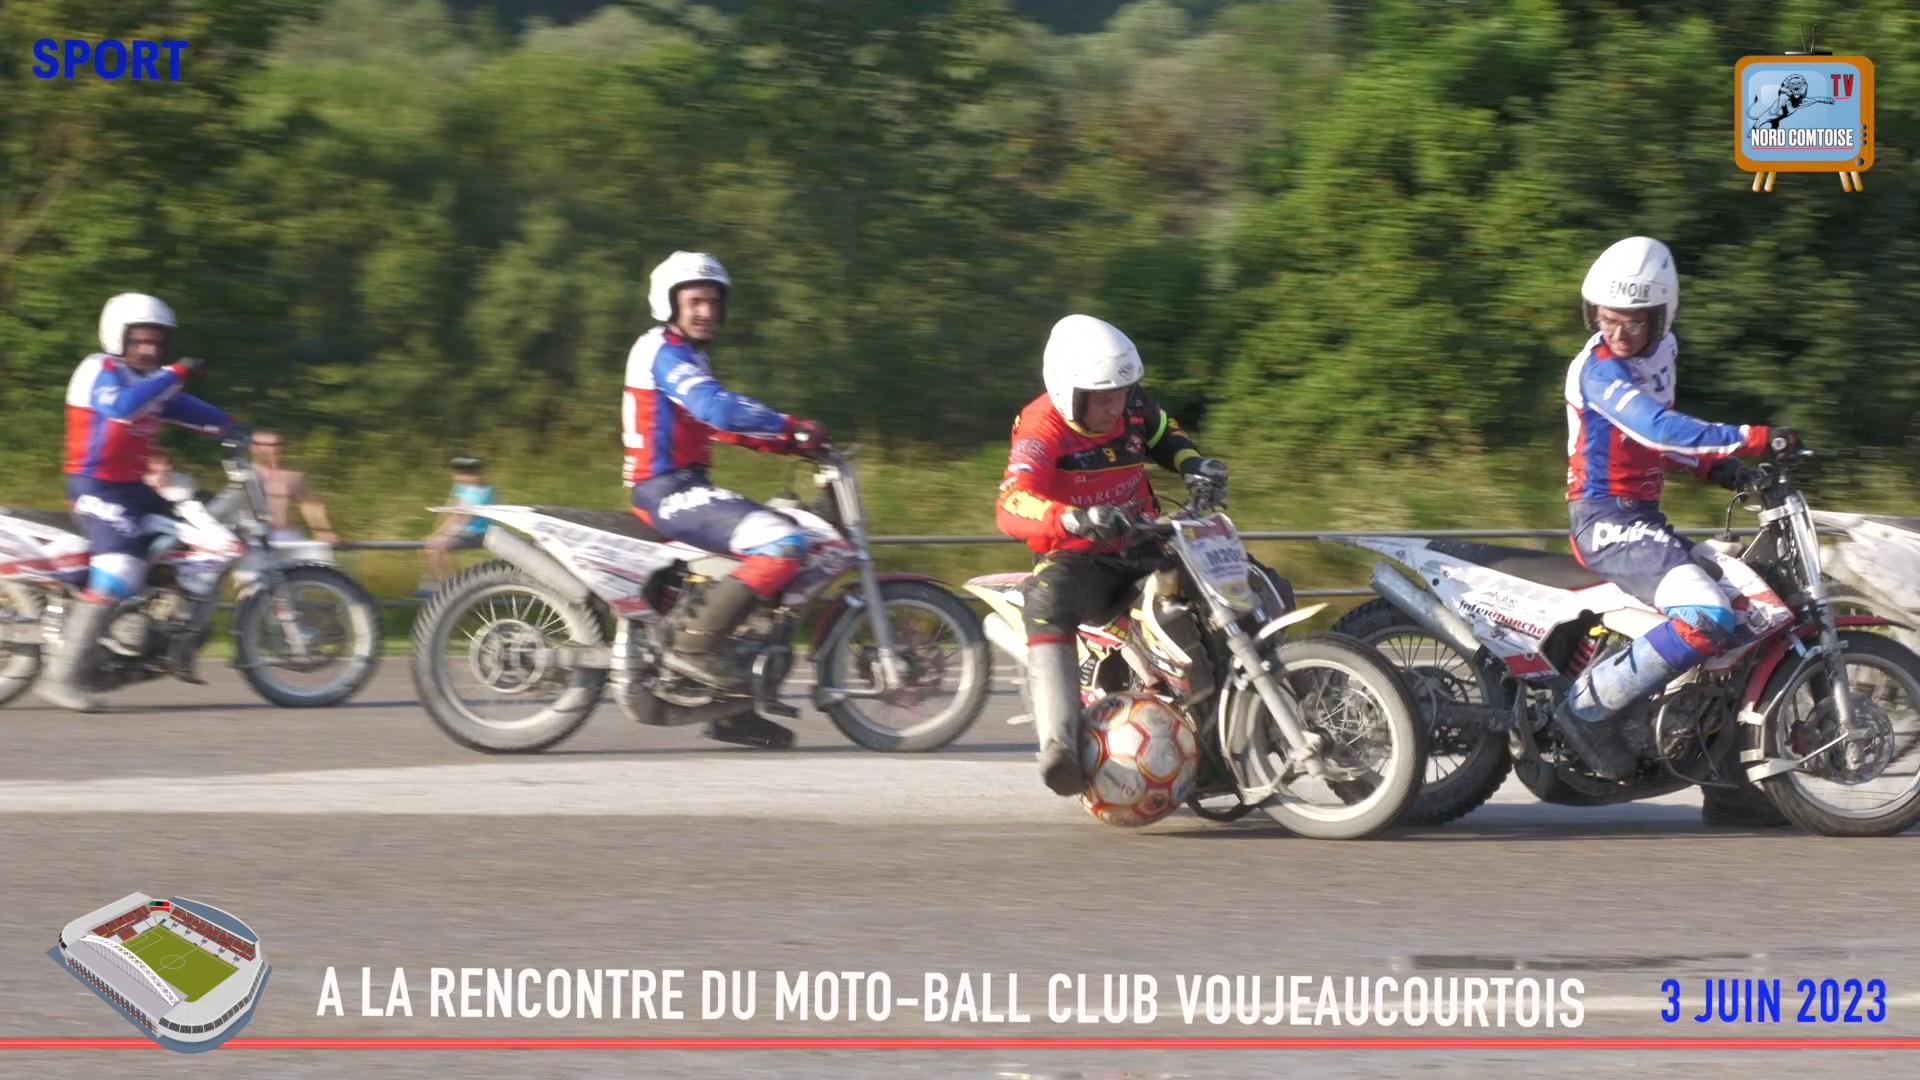 A LA DECOUVERT DE MOTO-BALL CLUB VOUJEAUCOURTOIS